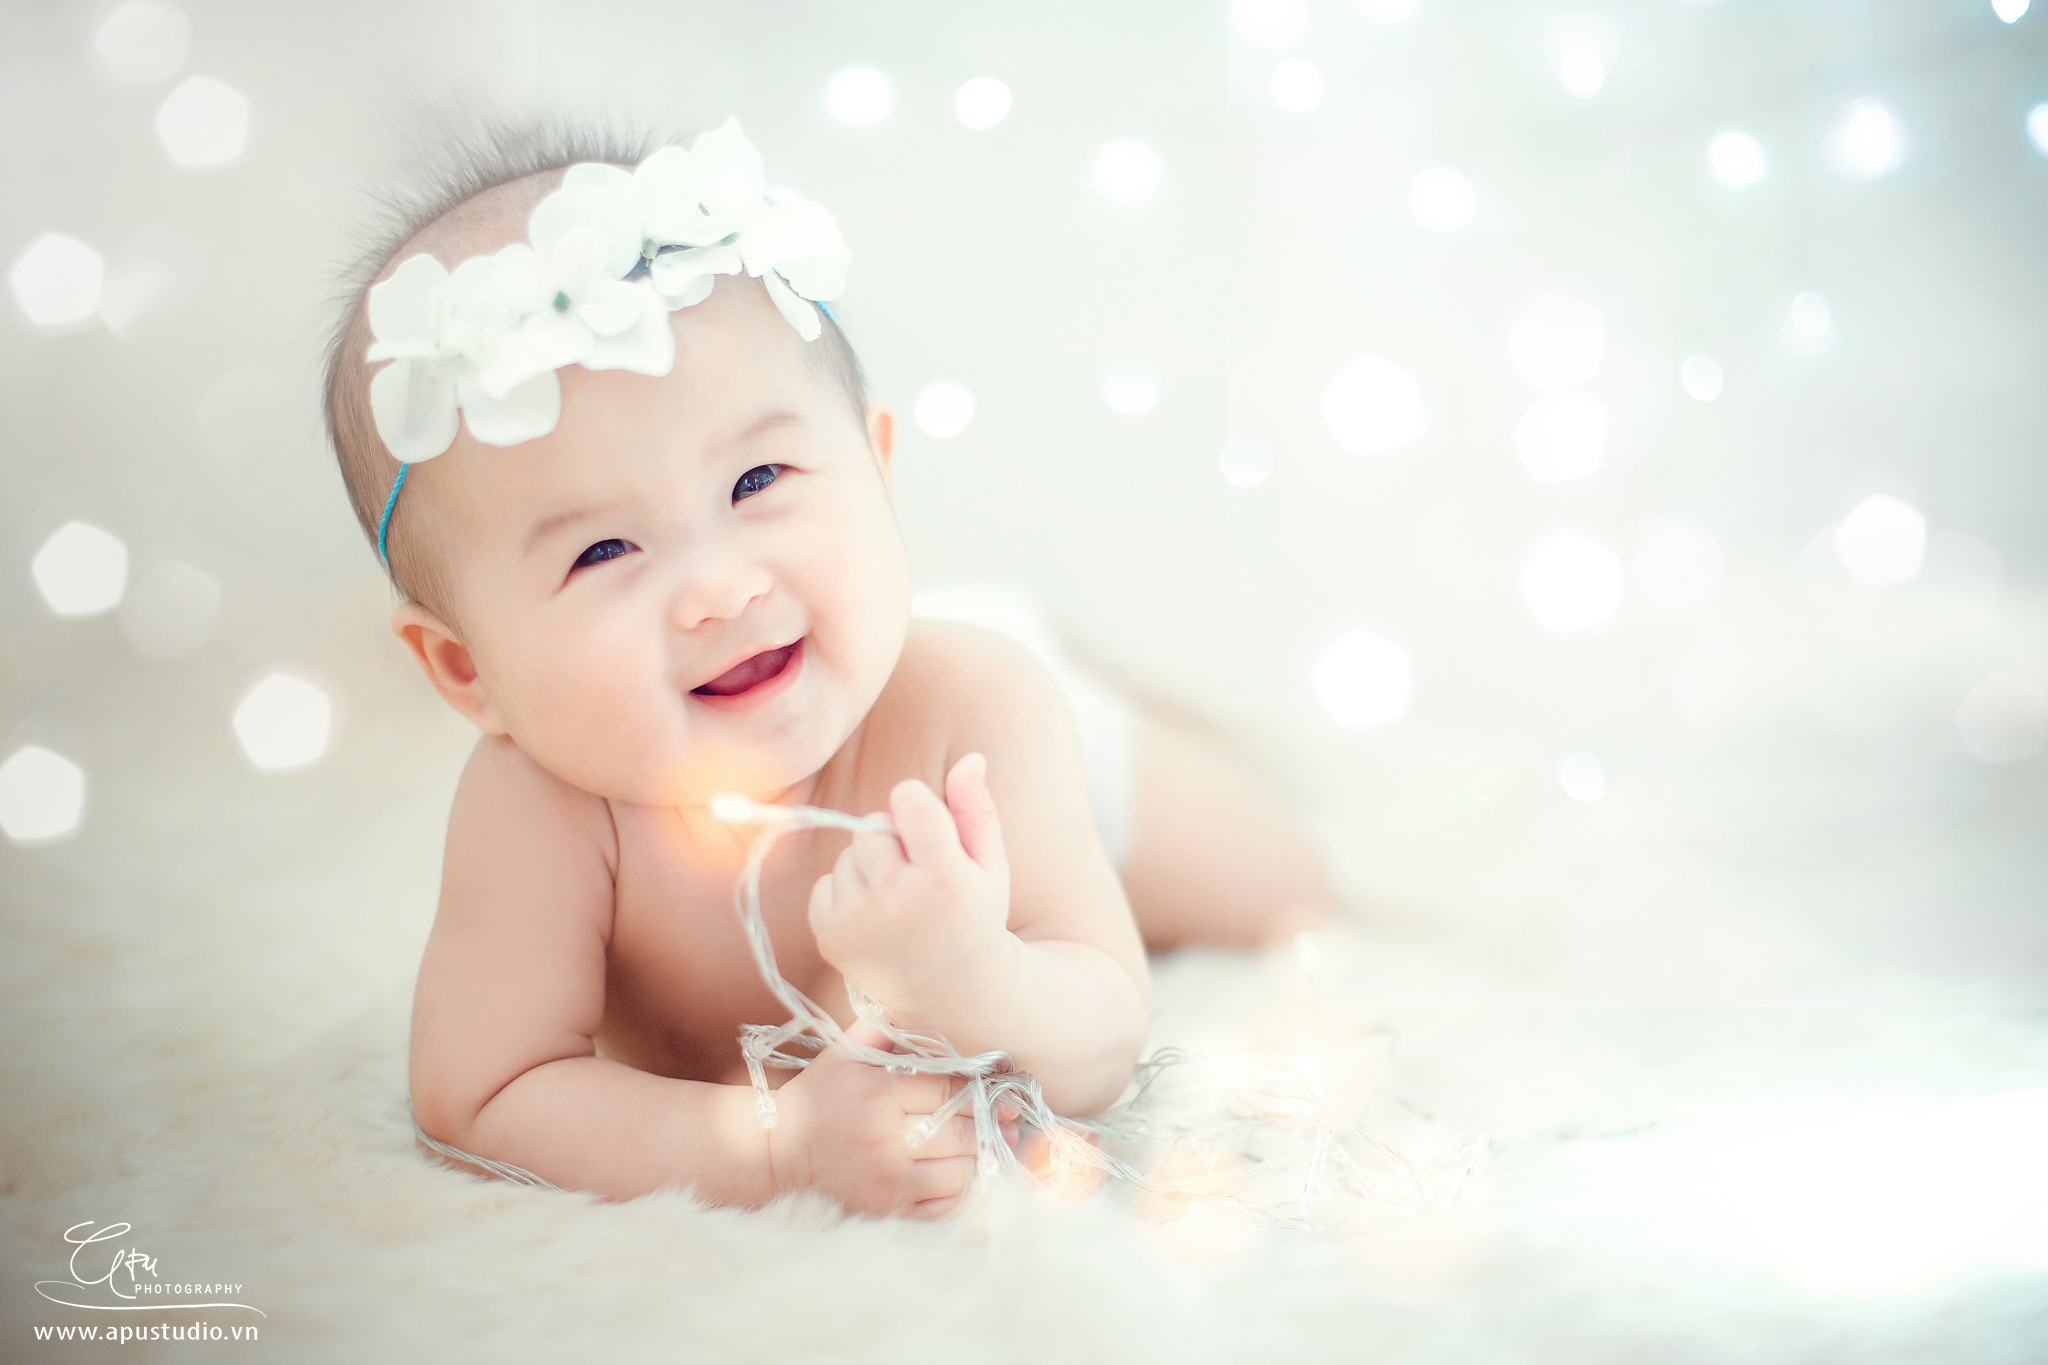 199+ Hình ảnh em bé đáng yêu, dễ thương nhất, hot nhất thế giới